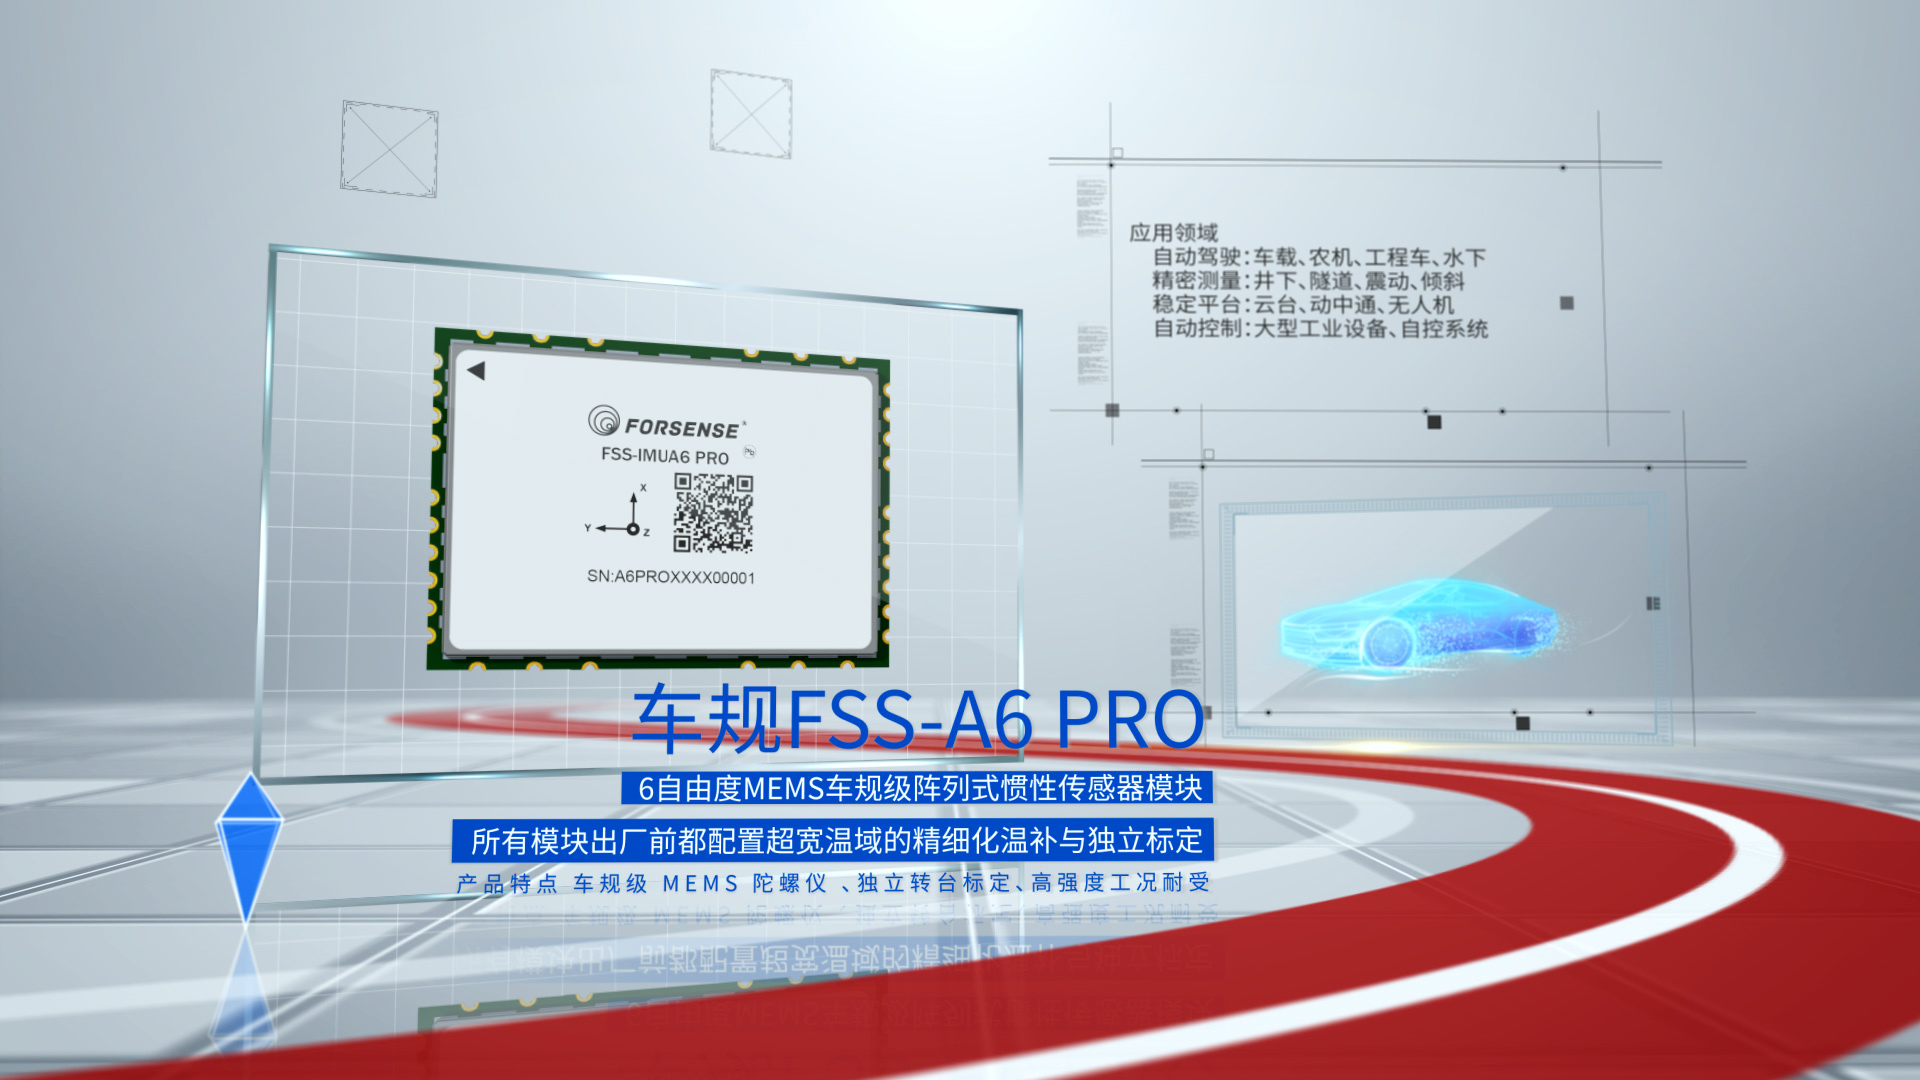 鸭博体育(中国)有限公司科技宣传片车规组合导航A6-Pro.jpg